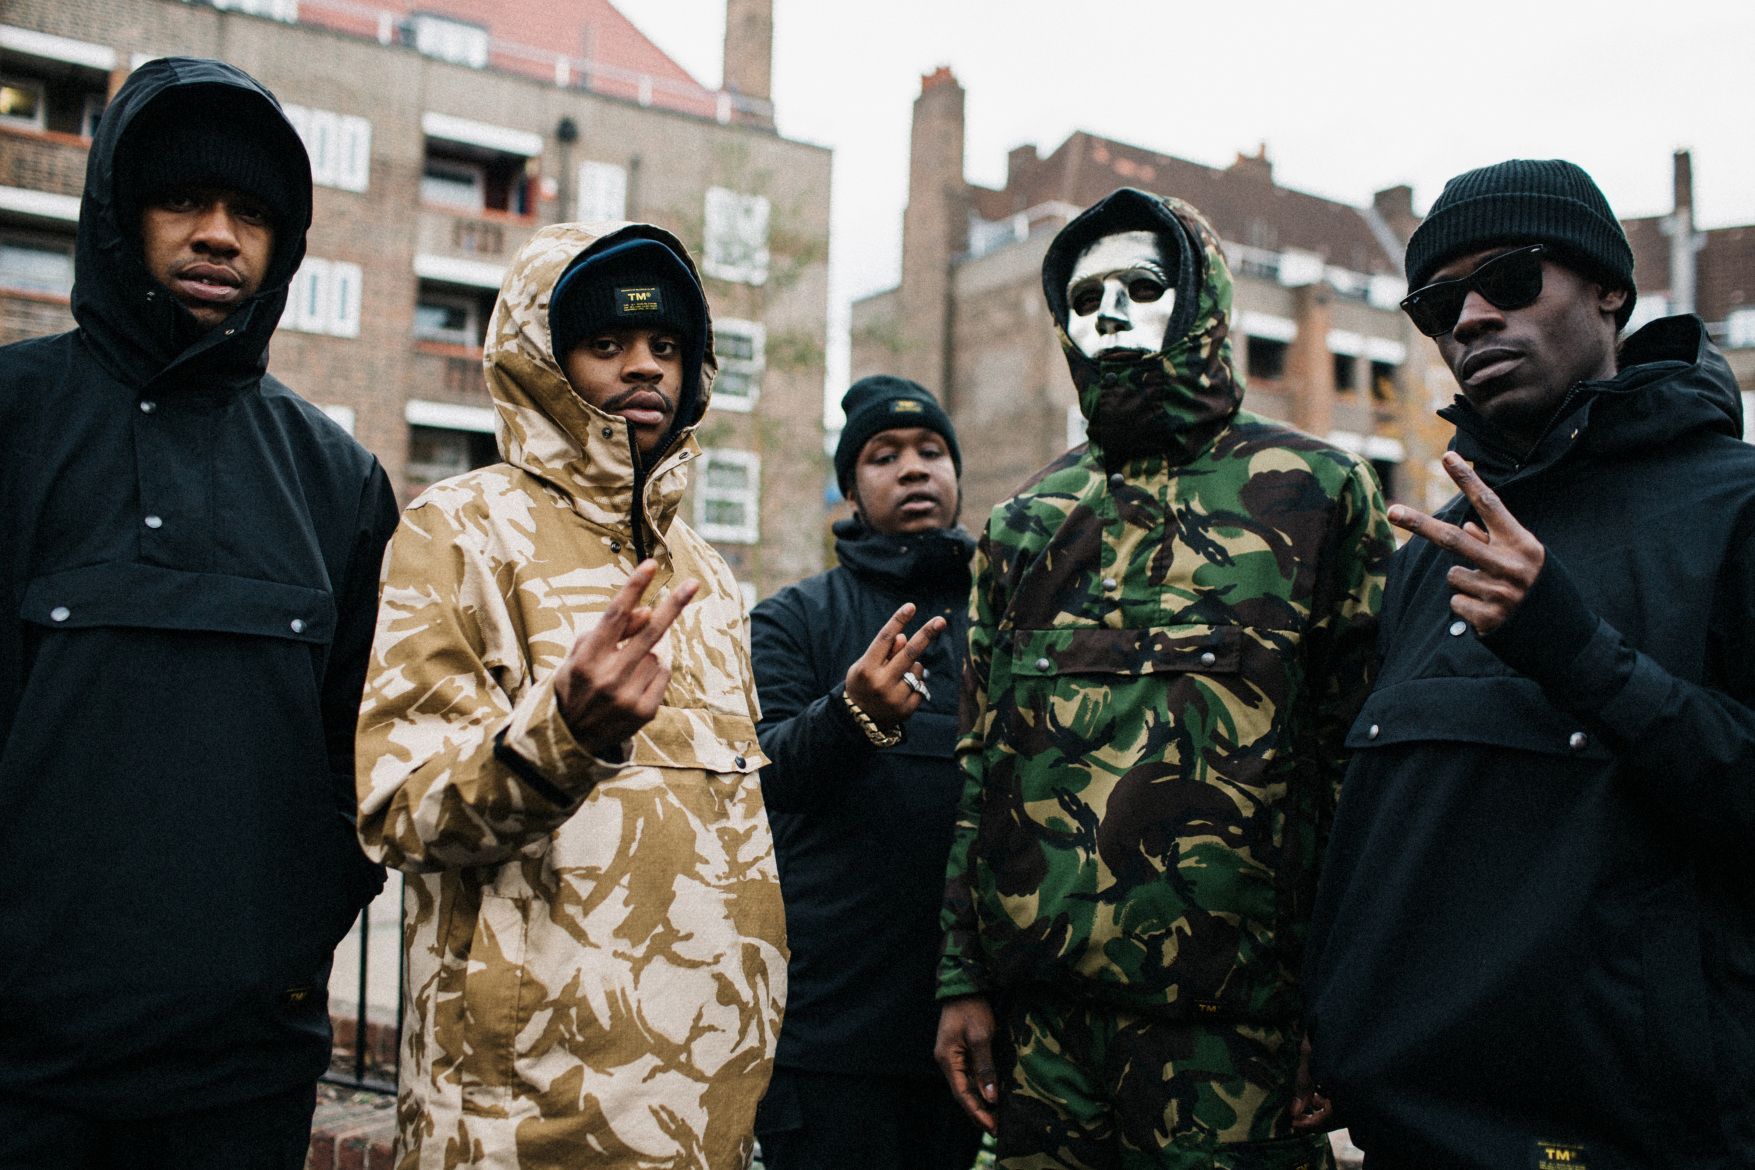 D Double E And UK Road Rap Crew 67 Front TM's 2016 Fall Winter Lookbook. Winter Lookbook, Gang Culture, Street Culture